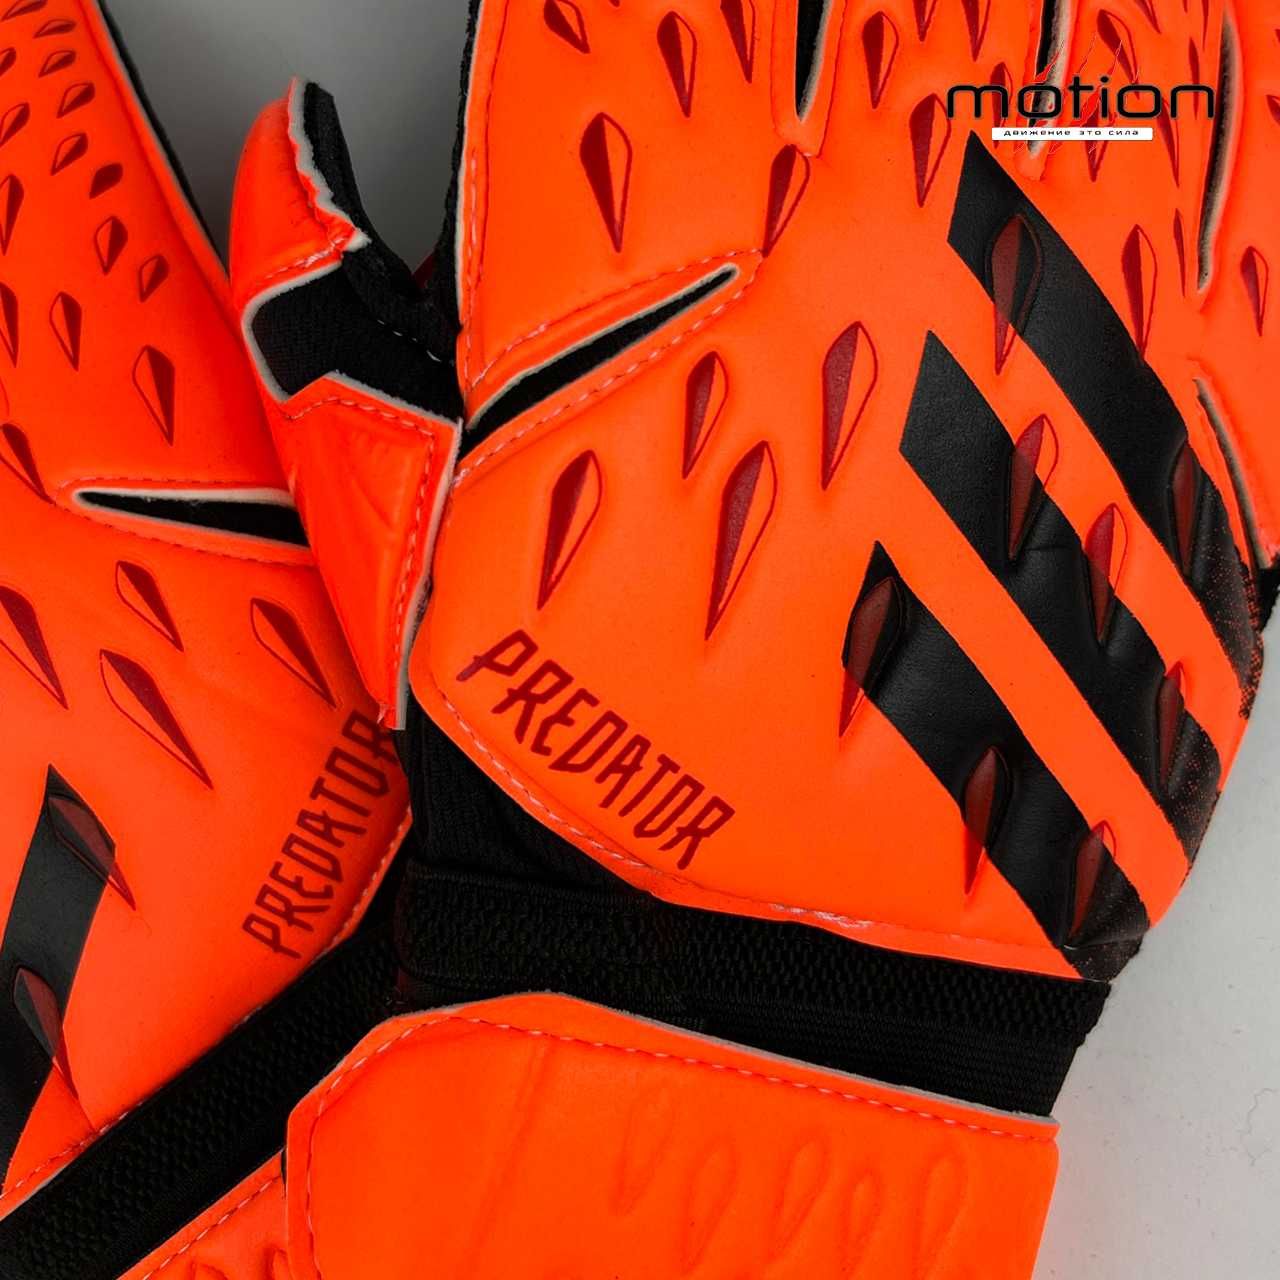 Вратарские перчатки Adidas Predator, черный, оранжевый (размеры: 8,9)